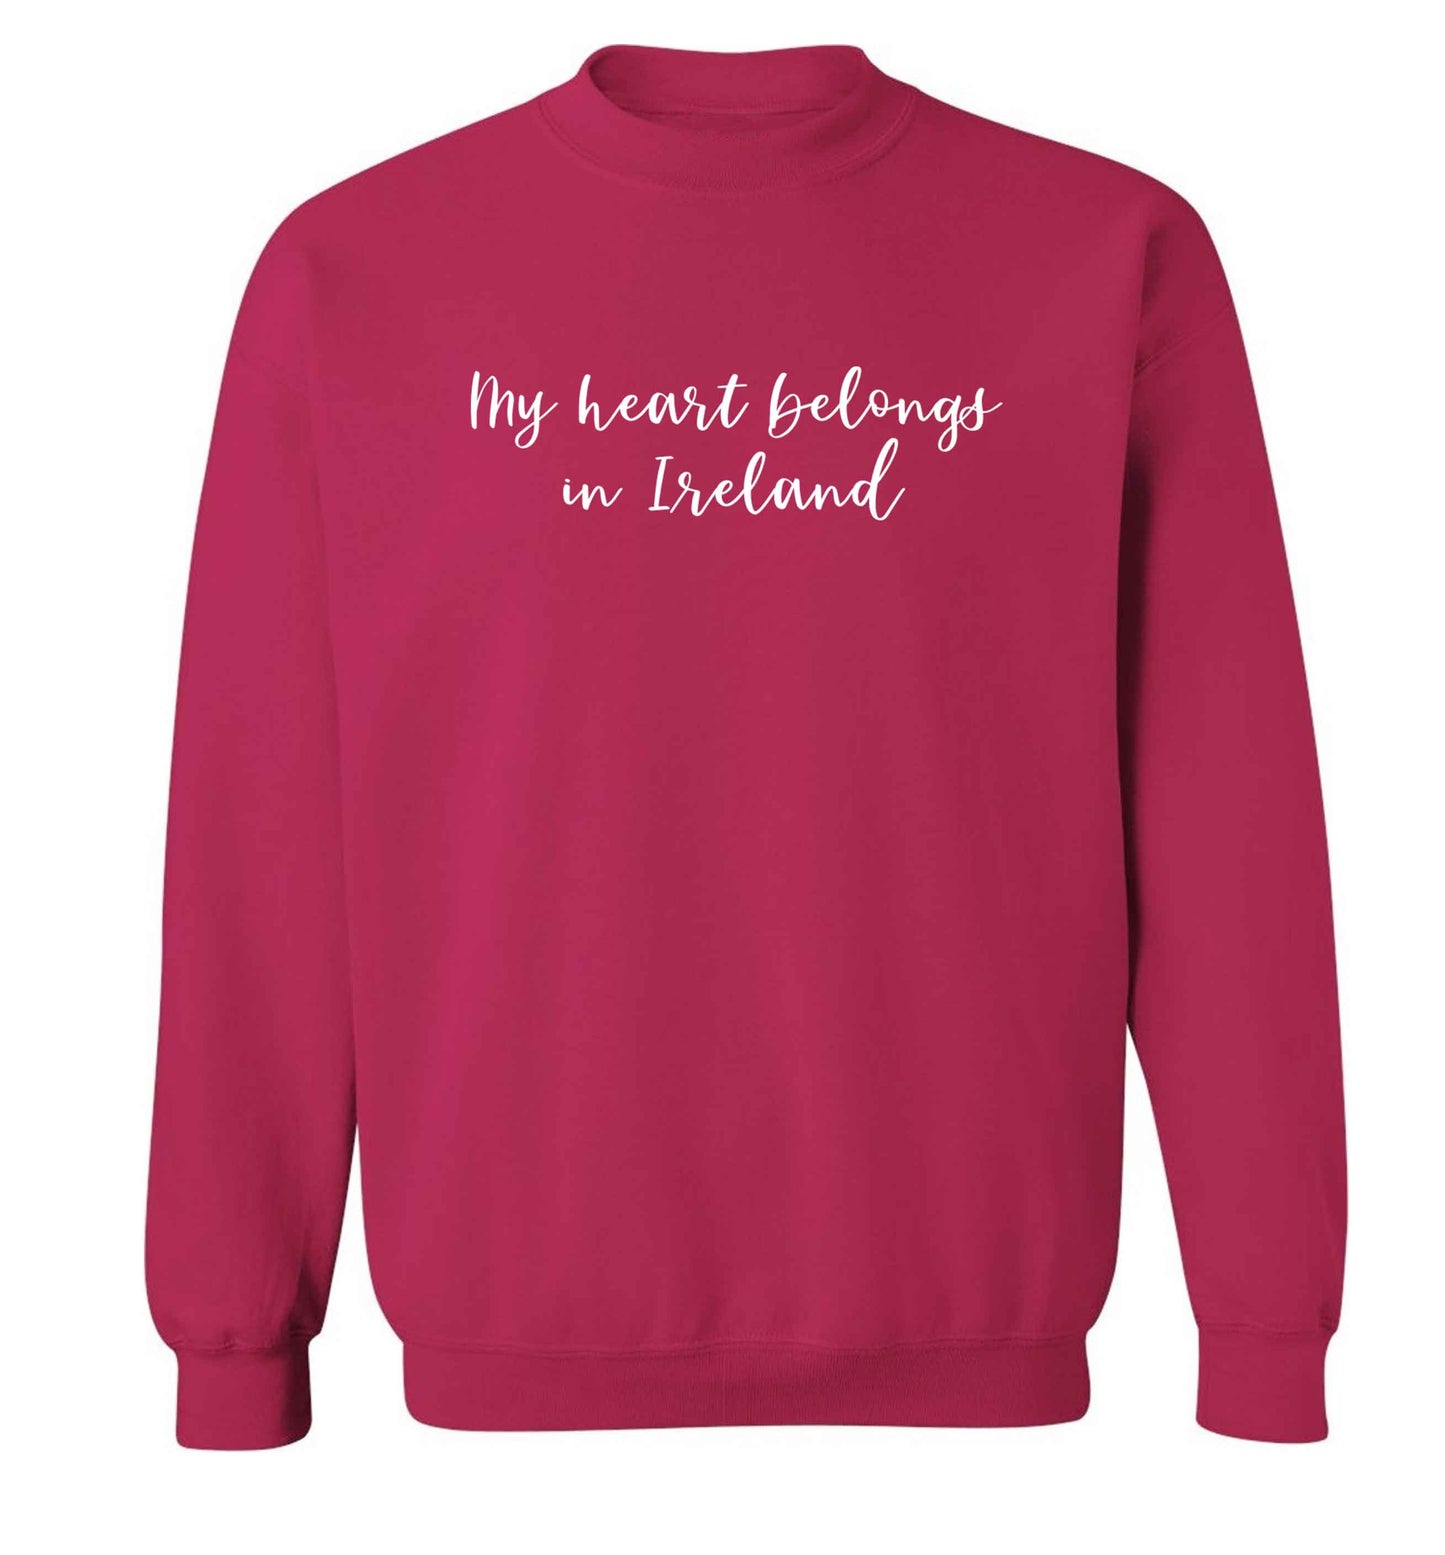 My heart belongs in Ireland adult's unisex pink sweater 2XL